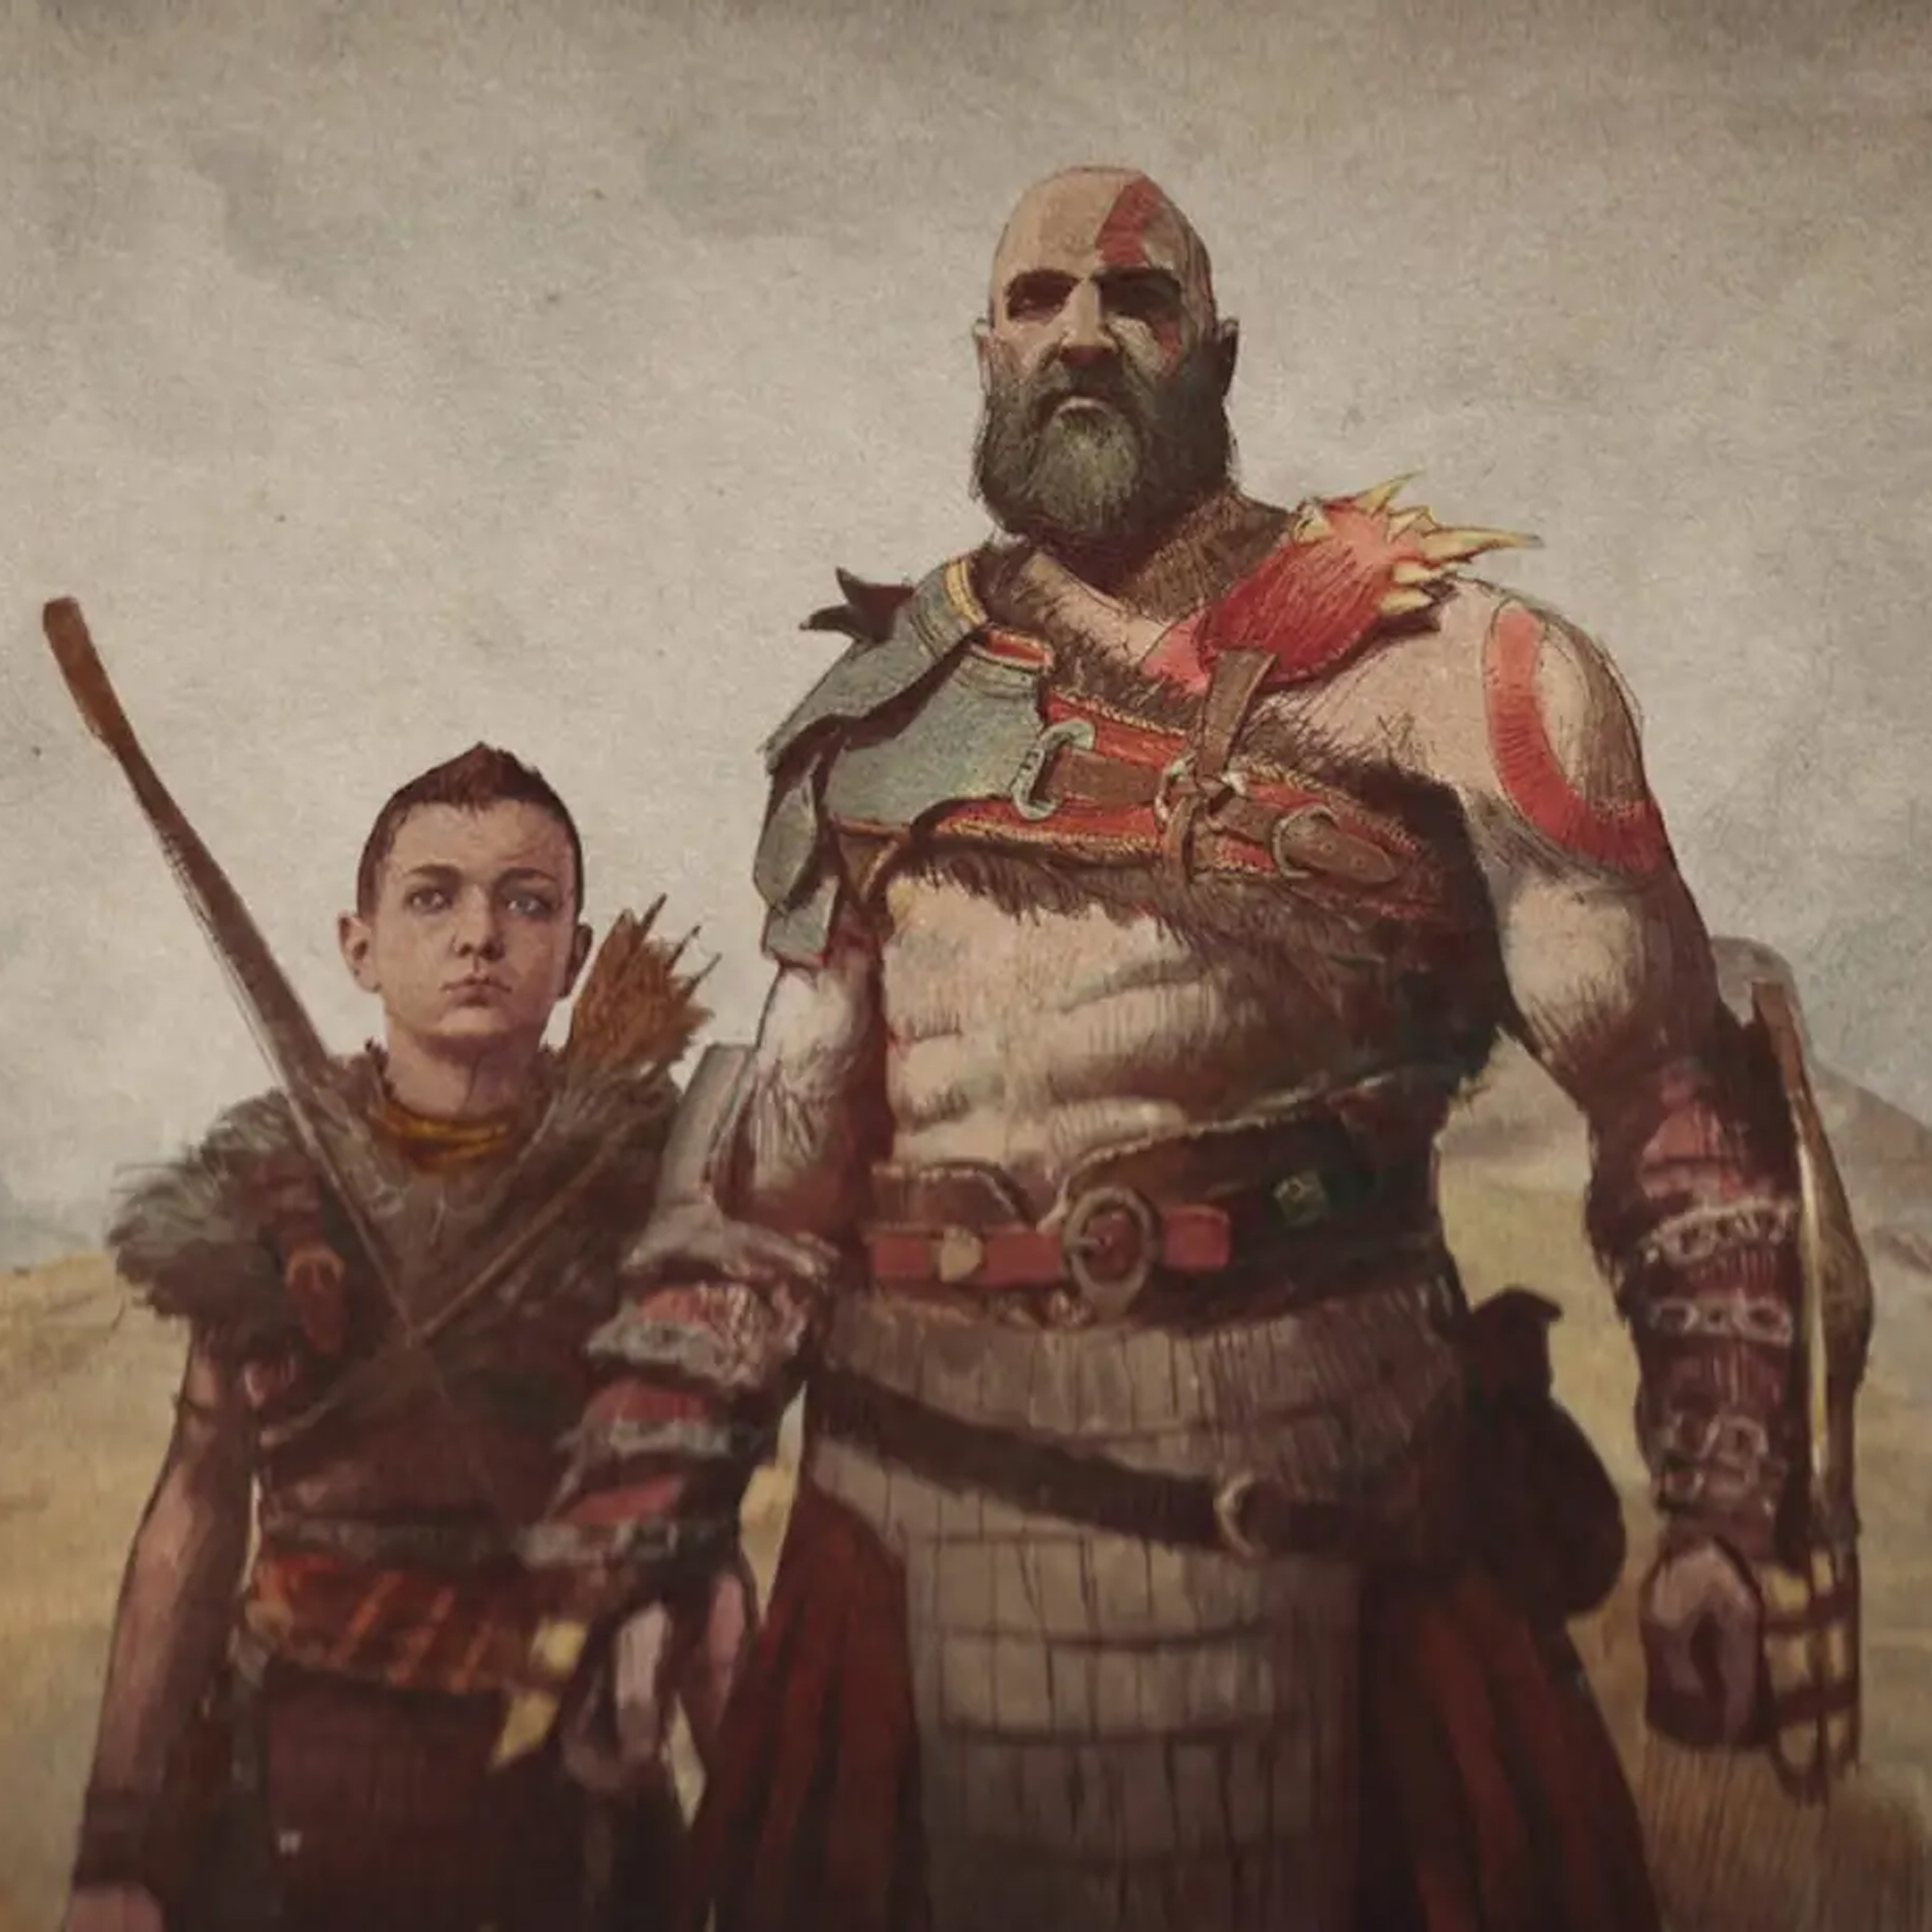 Kratos and Atreus in the God of War story recap video.